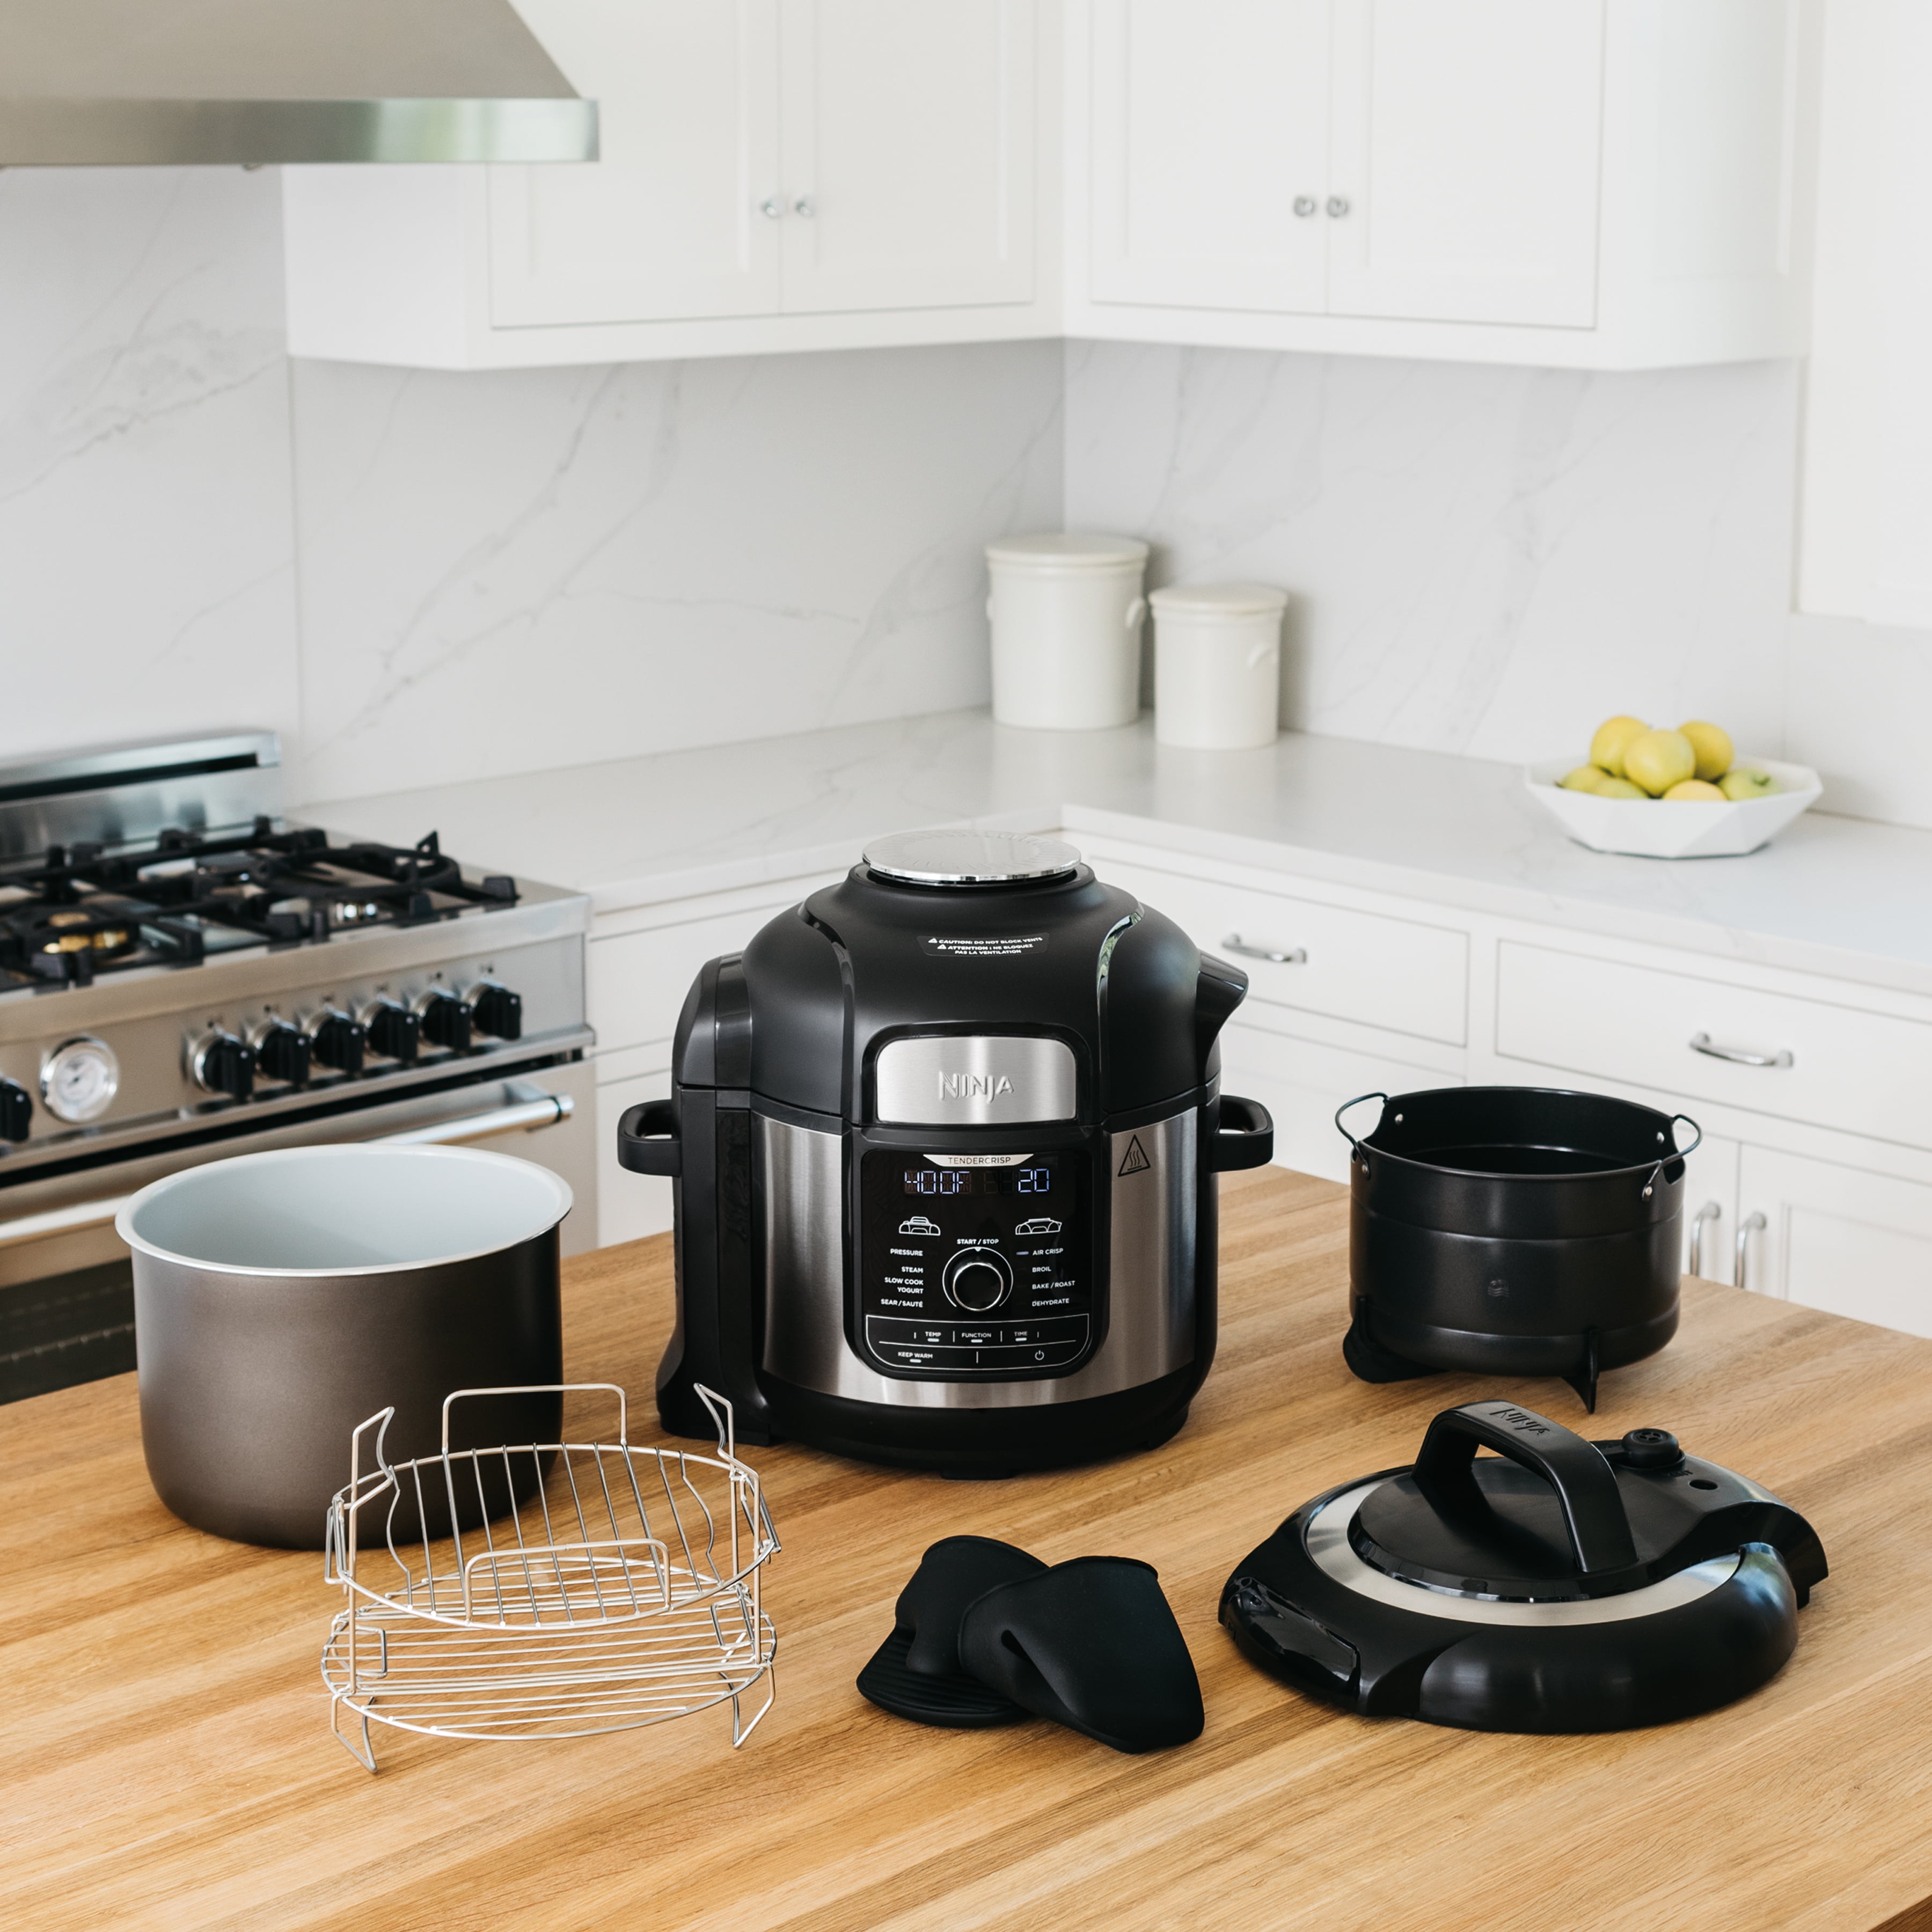 Ninja® Foodi 14-in-1 8-qt. SMART XL Pressure Cooker Steam Fryer